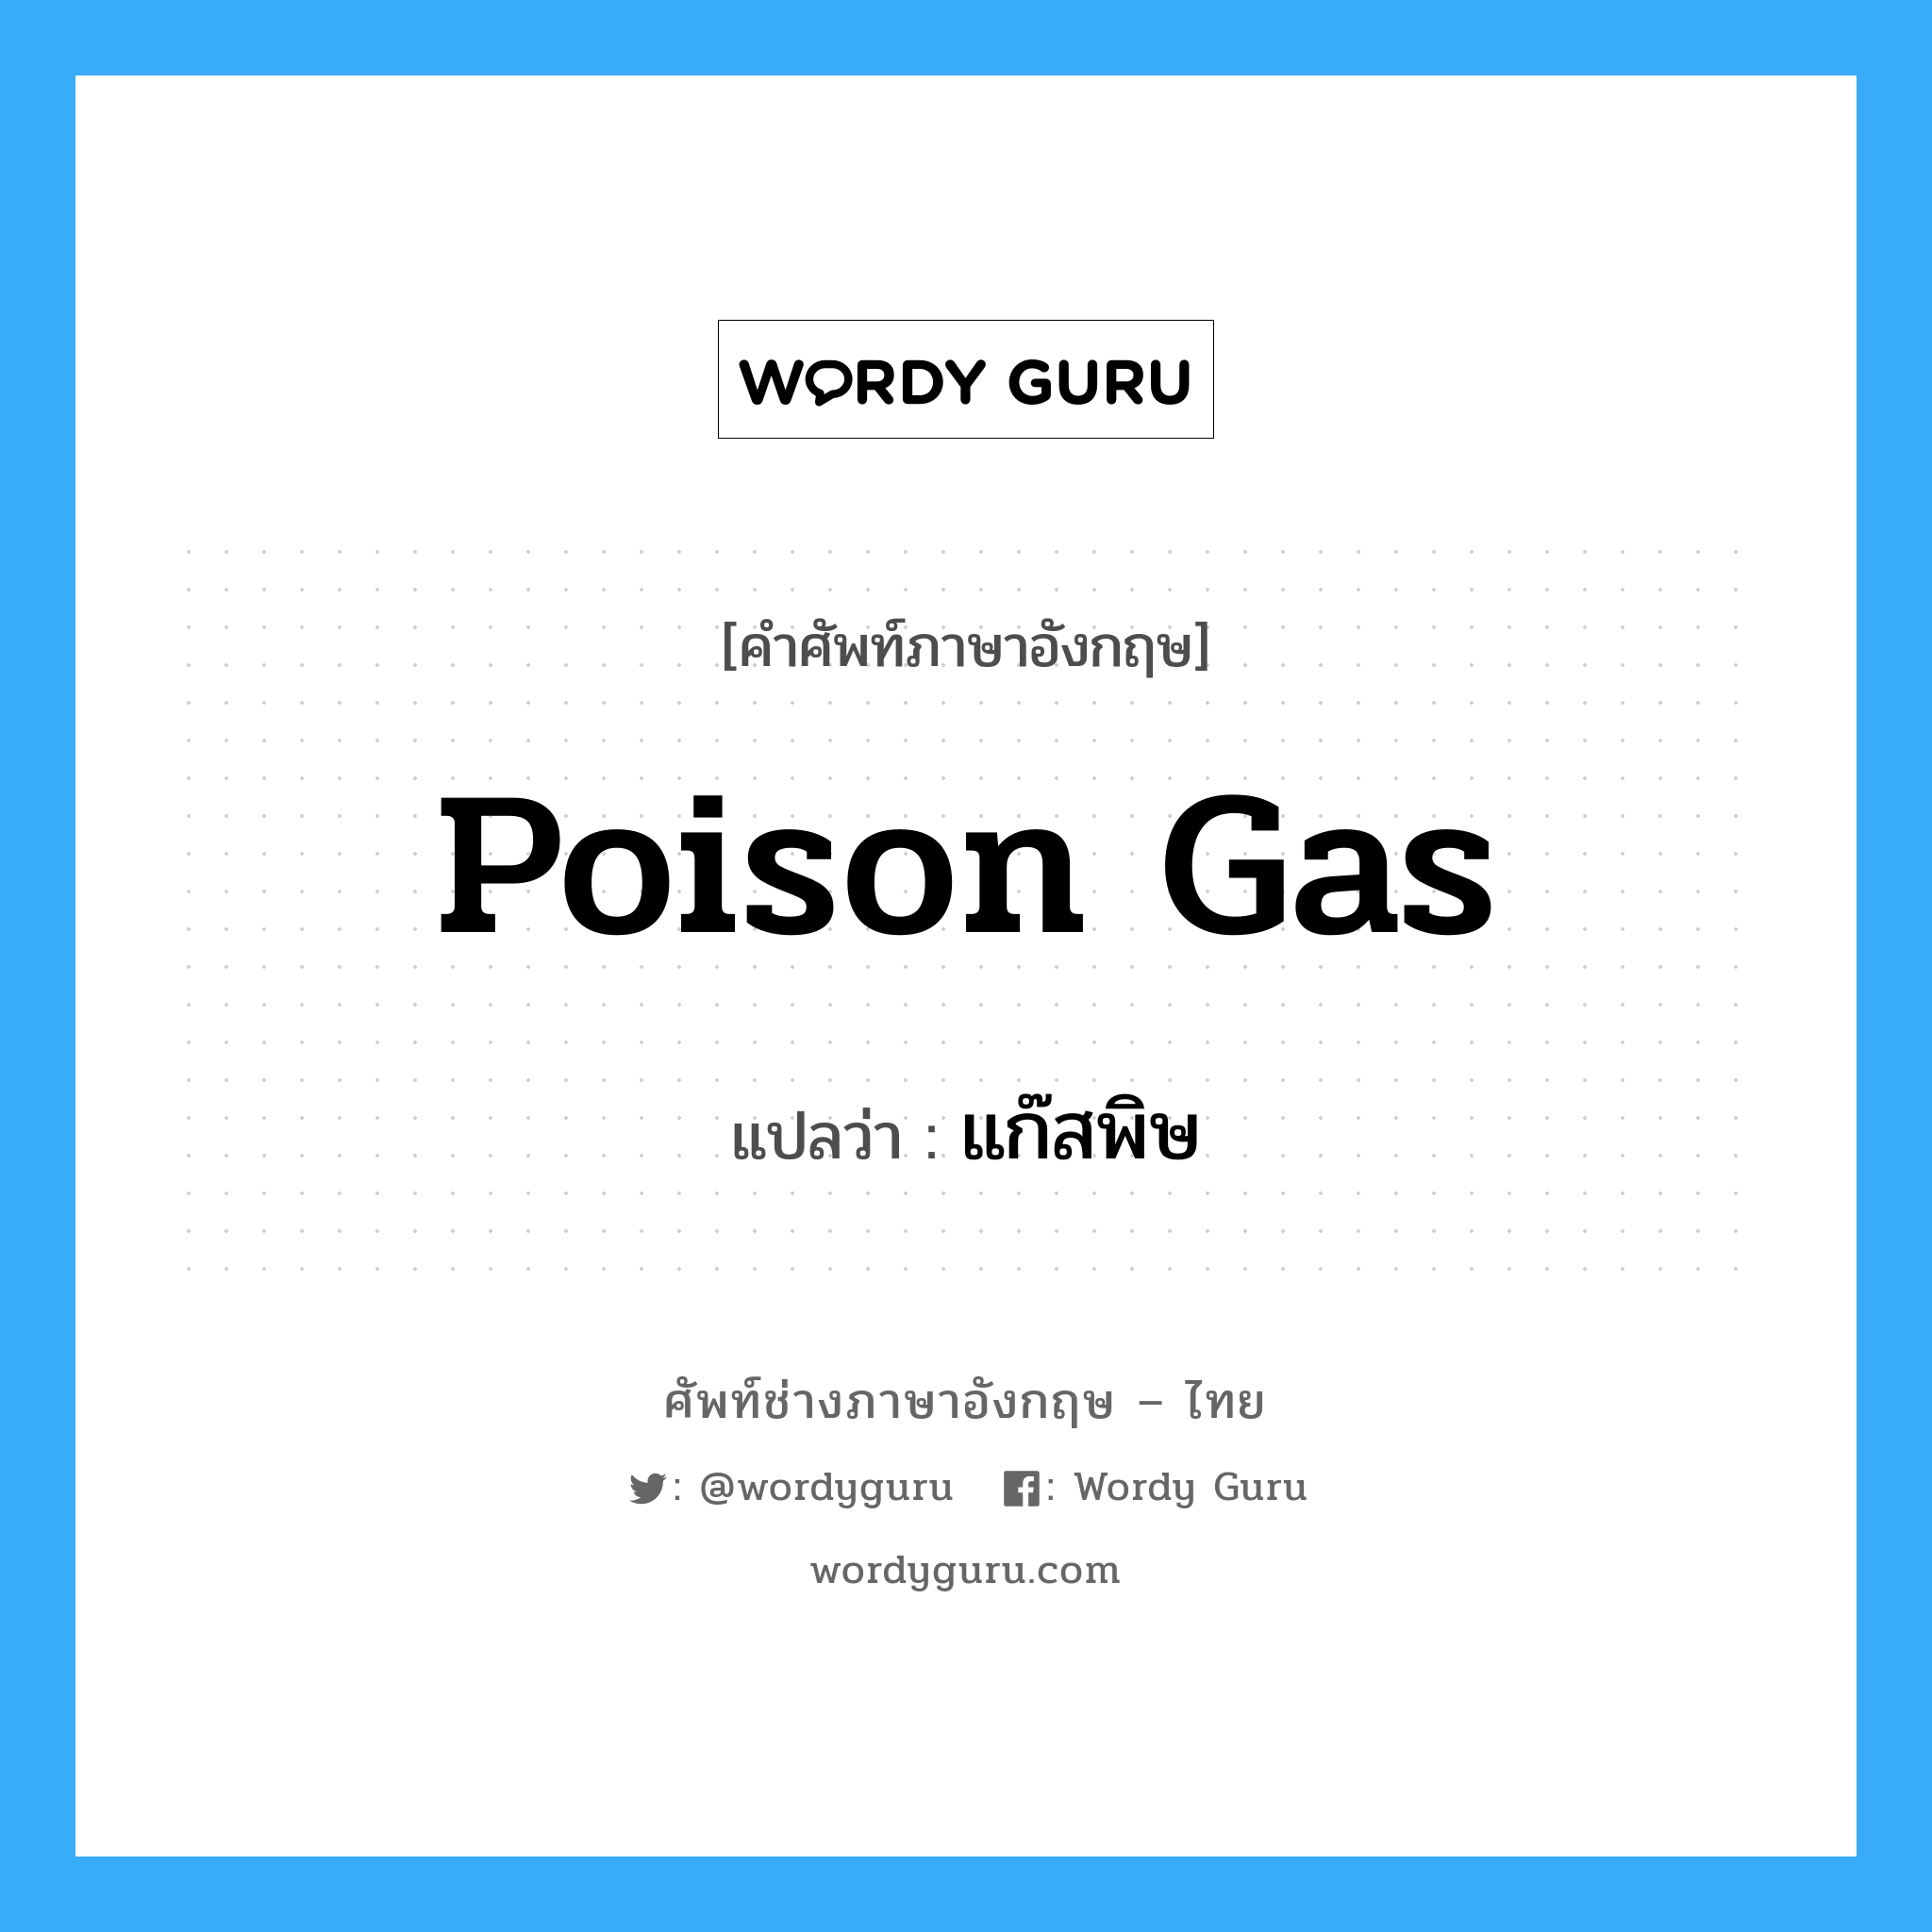 แก๊สพิษ ภาษาอังกฤษ?, คำศัพท์ช่างภาษาอังกฤษ - ไทย แก๊สพิษ คำศัพท์ภาษาอังกฤษ แก๊สพิษ แปลว่า poison gas